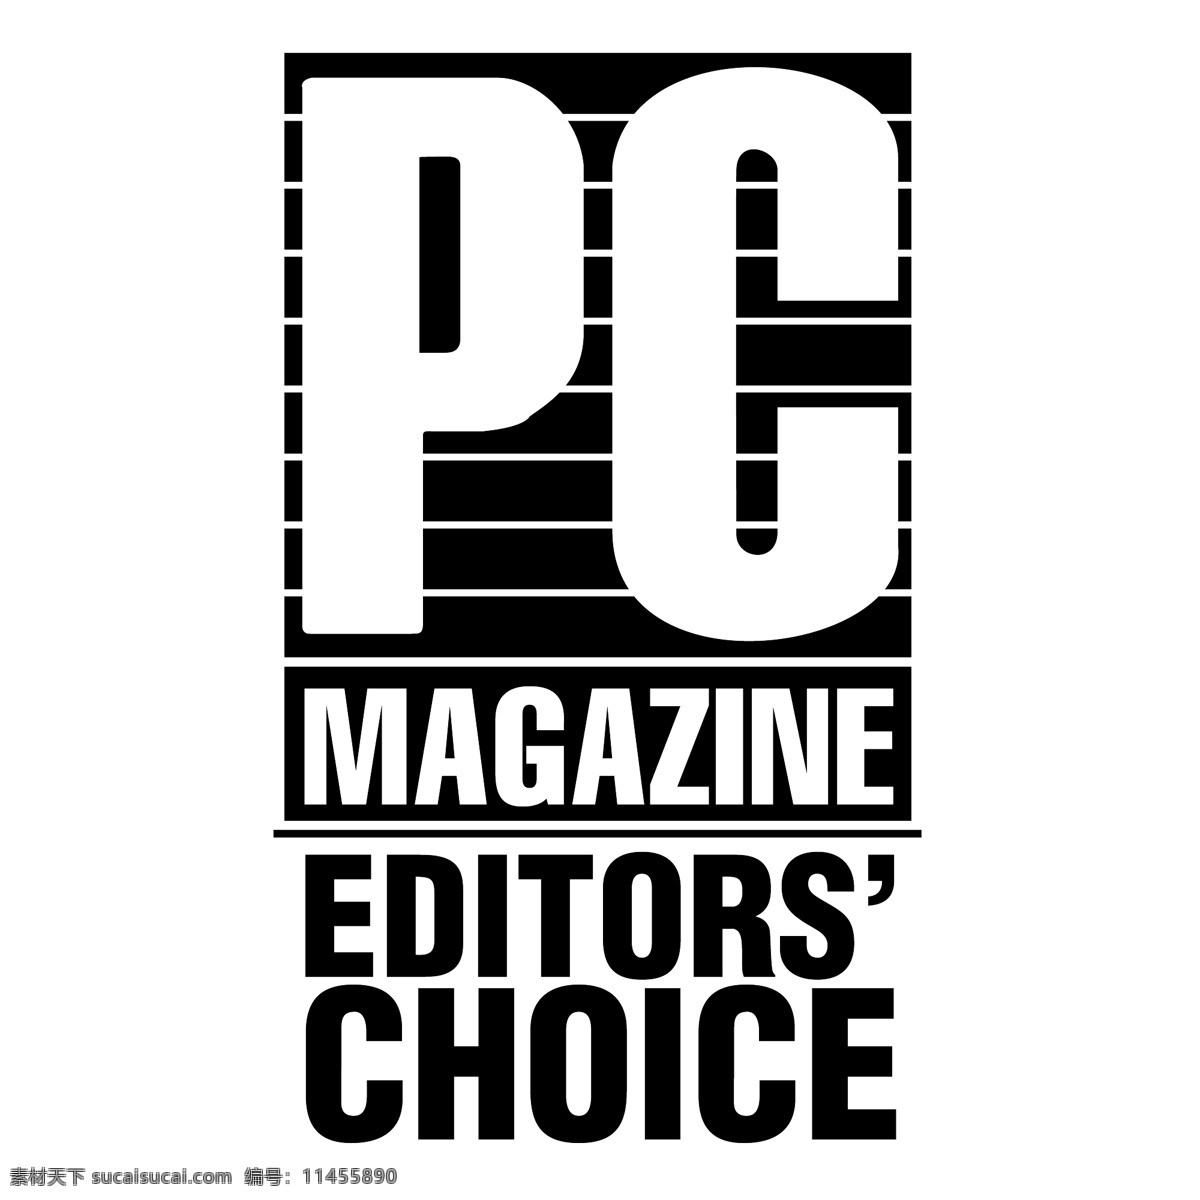 个人 电脑杂志 杂志 矢量pc magazine pc 载体pc 图形设计 矢量 图像 艺术 免费 向量 向量的pc 图形 电脑 建筑家居